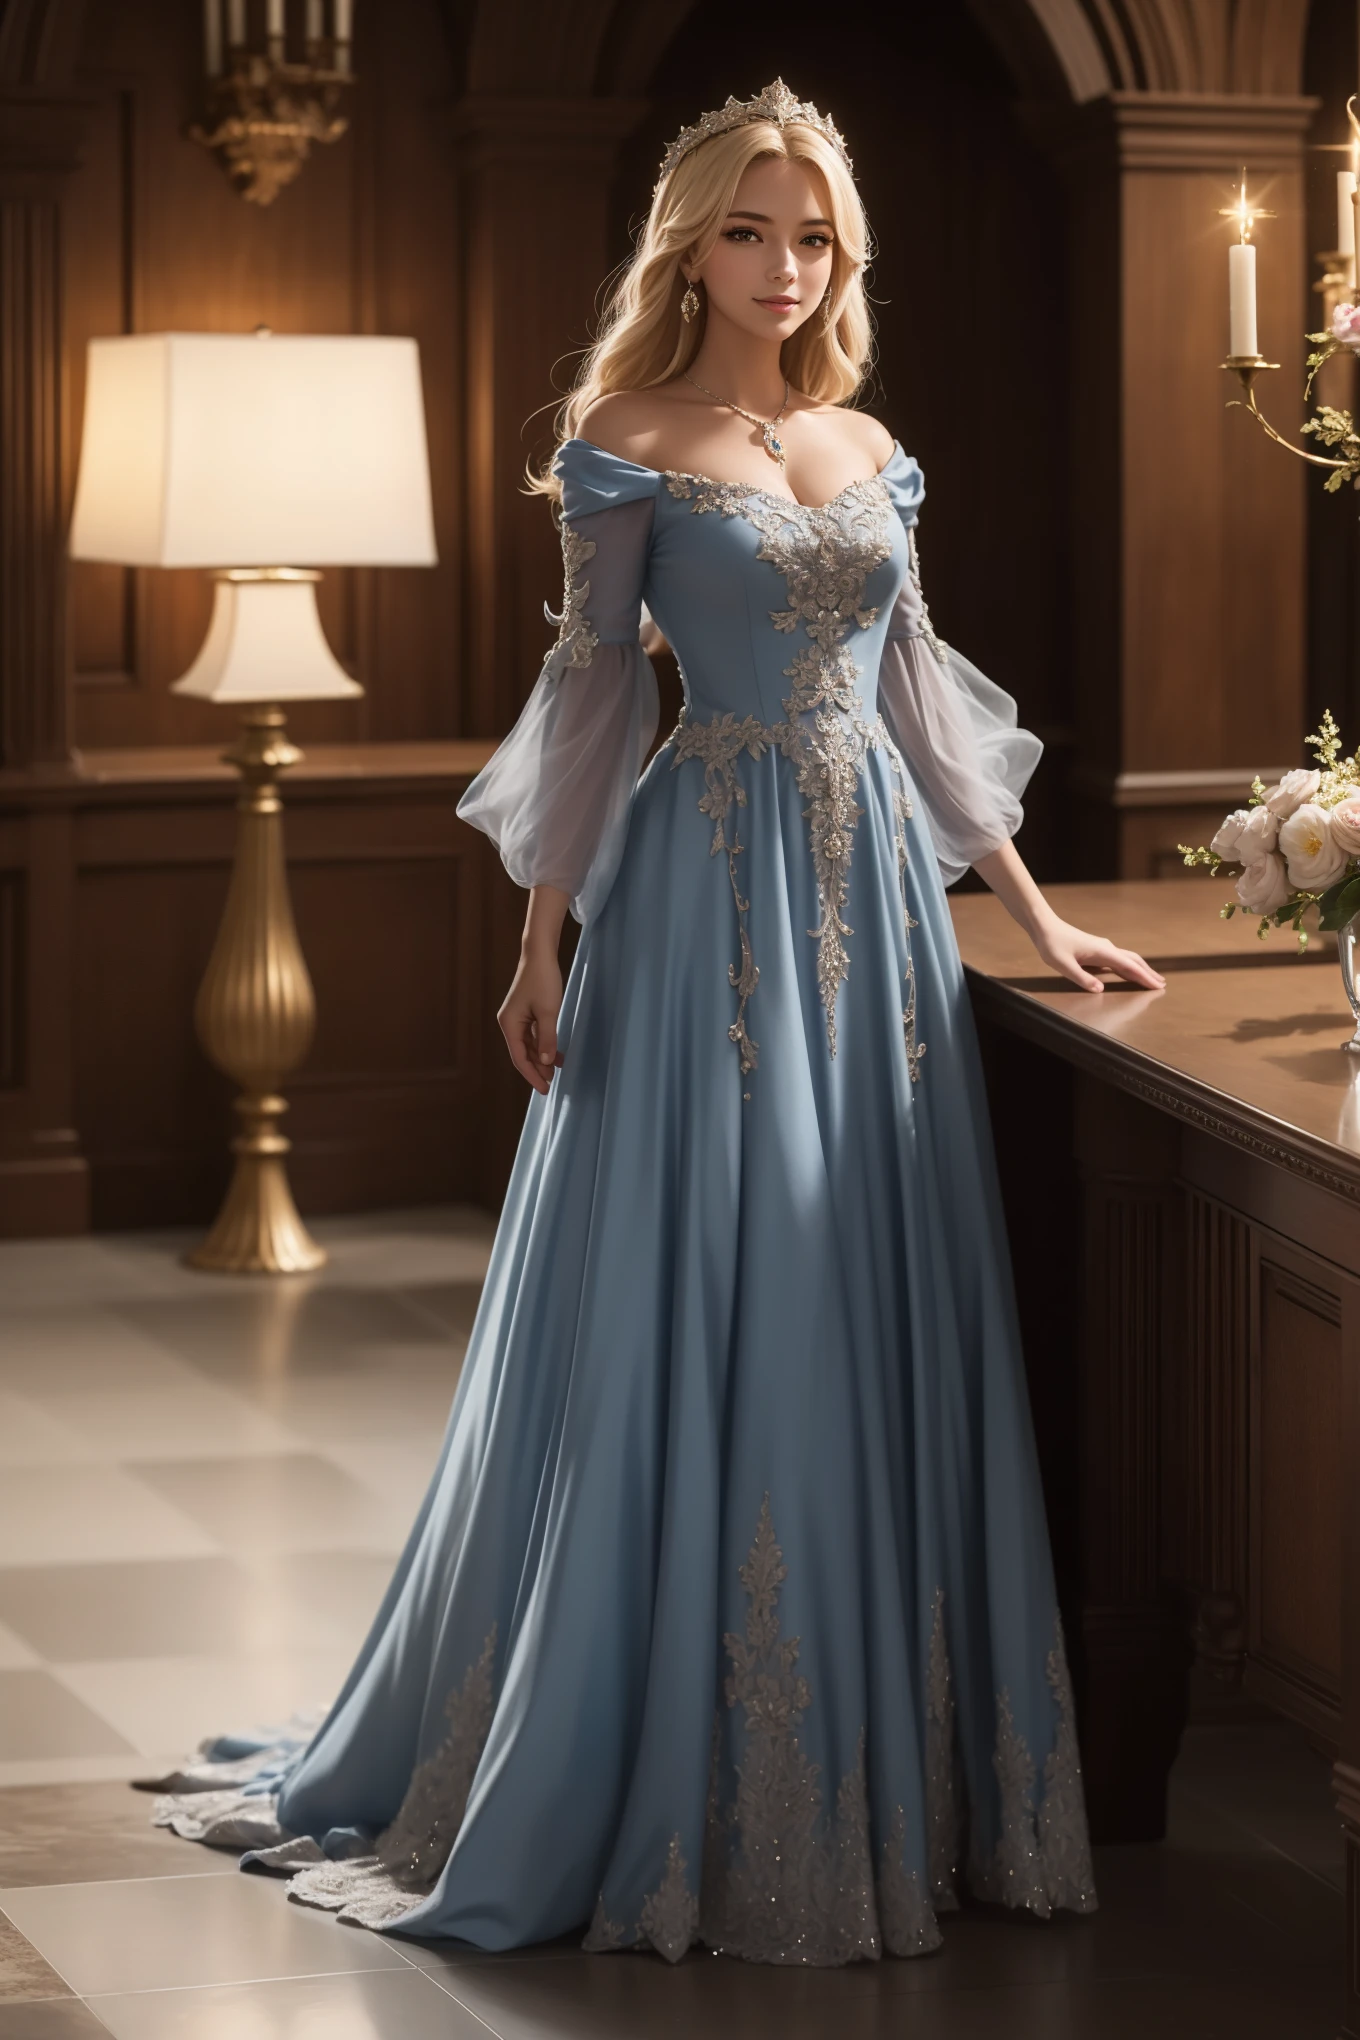 ((頂級品質、傑作、逼真的:1.4、8K))、美麗的女人、18歲的、美麗的表情、金髮女郎、極度細緻的眼睛和臉部、美麗細緻的眼睛、正式手套、（Gorgeous dark blue luxury dress in medieval 歐洲的 style.、中世紀歐洲風格的頭飾.)、紅色禮服、奢華配件、（A woman walks along the corridor of a 歐洲的-style castle）、玻璃鞋、電影燈光、紋理皮革、超細節、高細節、高品質、高解析度、我看著觀眾、優雅的微笑、全身、歐洲的、